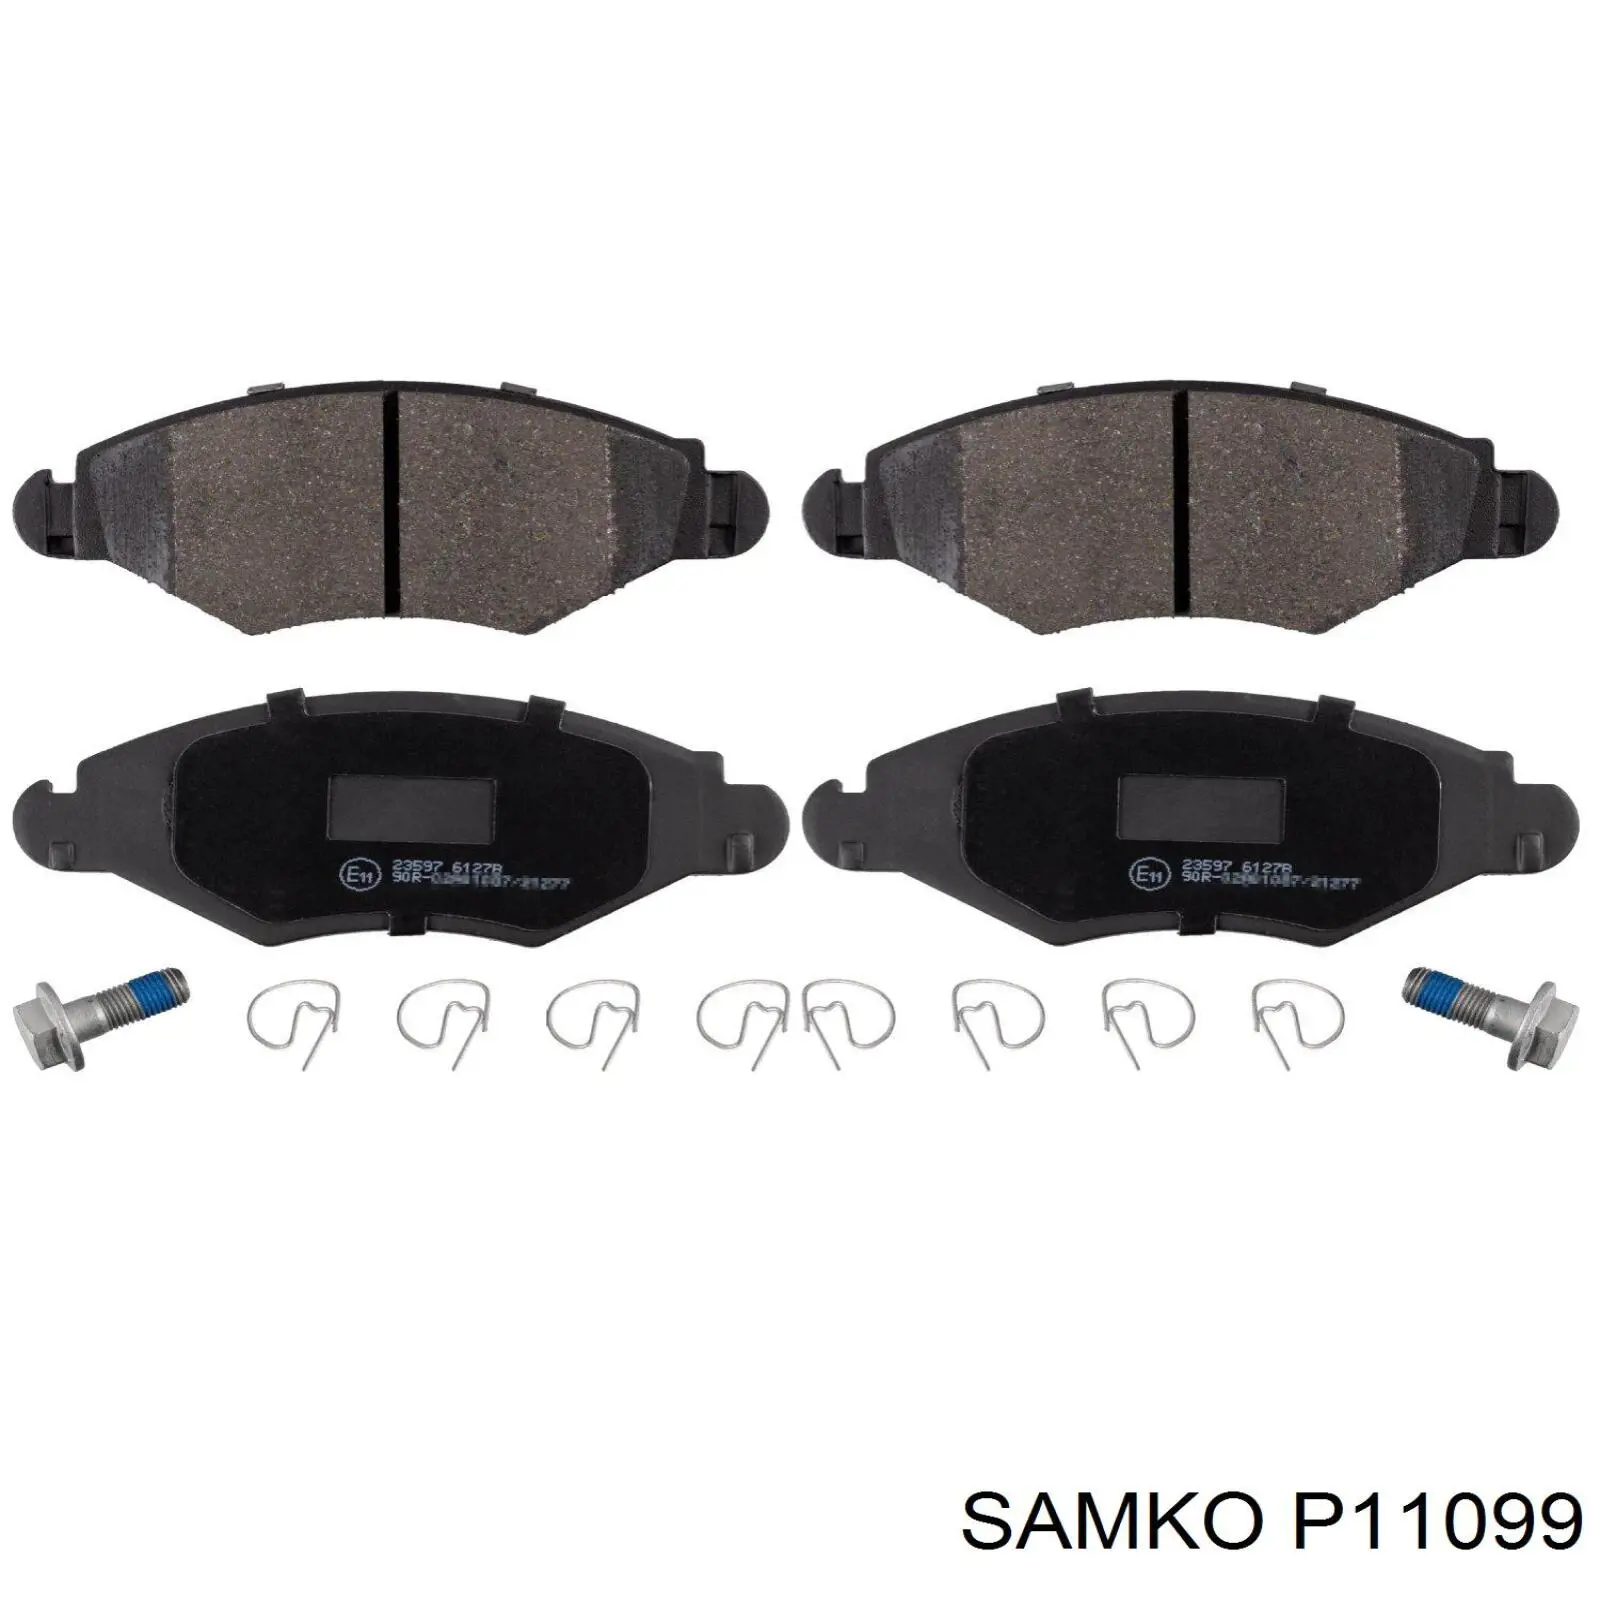 P11099 Samko цилиндр тормозной главный